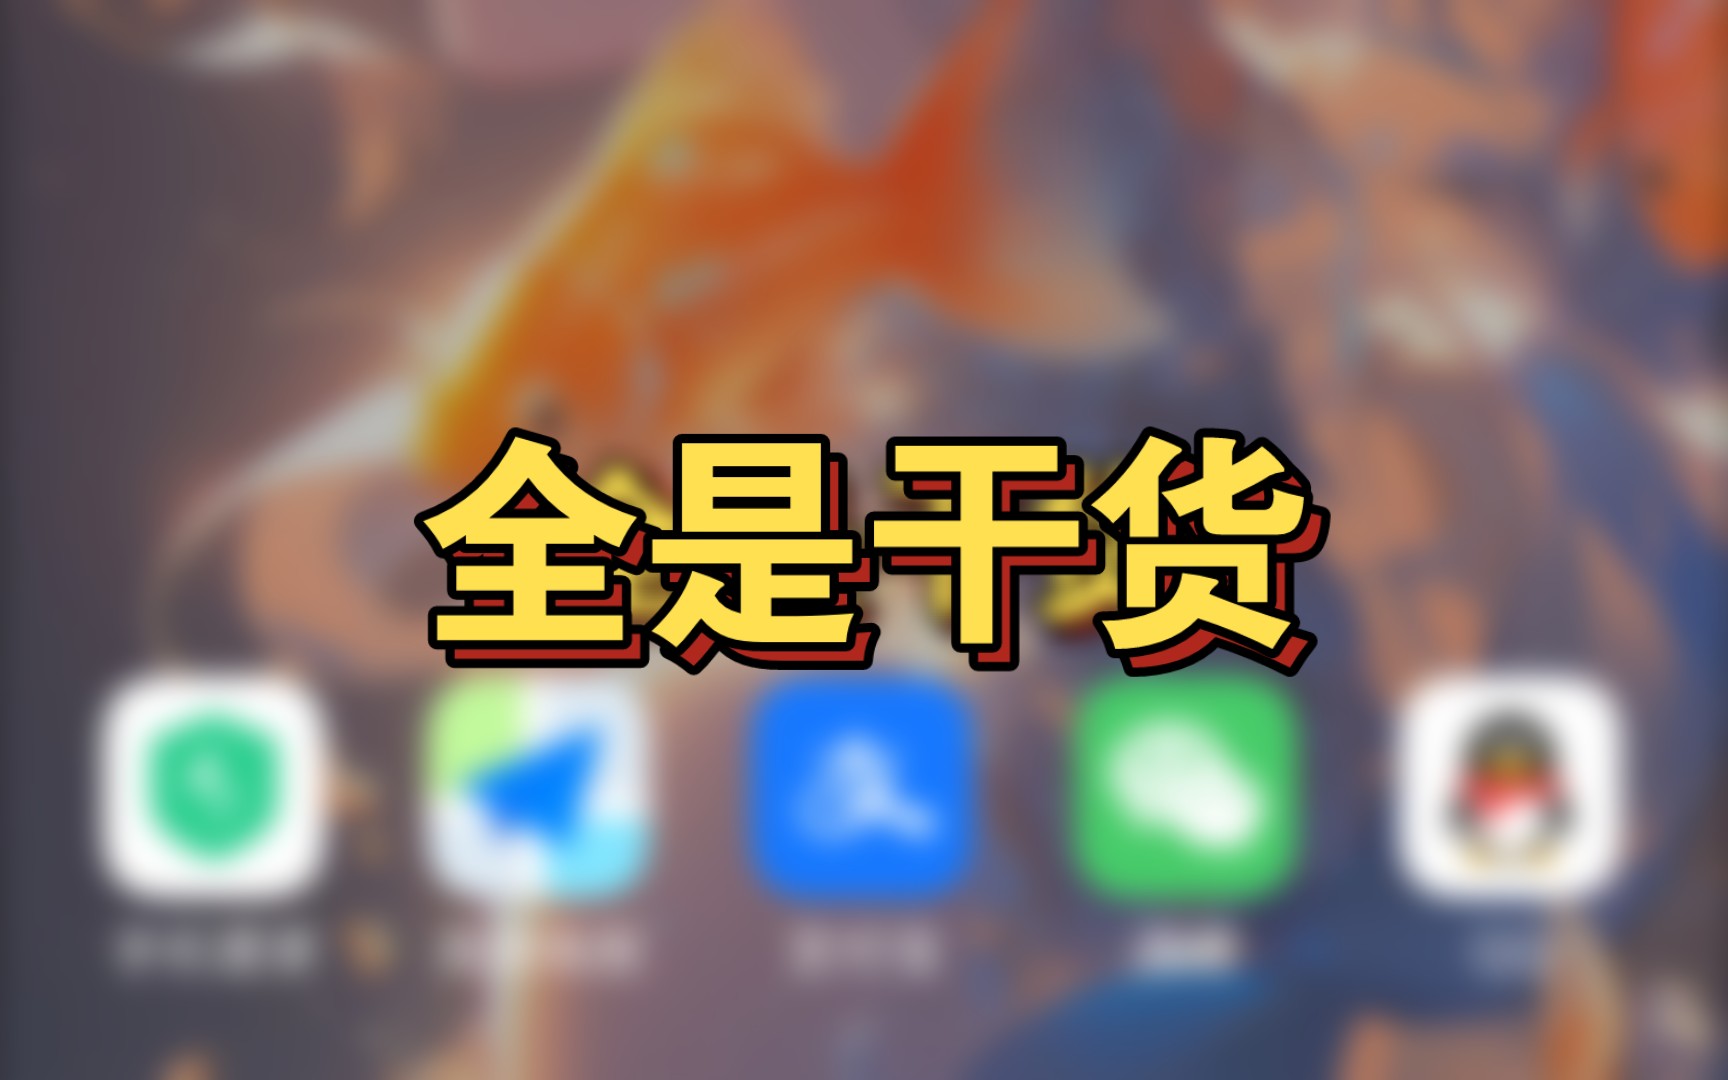 游戏中心下载小米手机官网_小米官方游戏中心_小米中心游戏中心